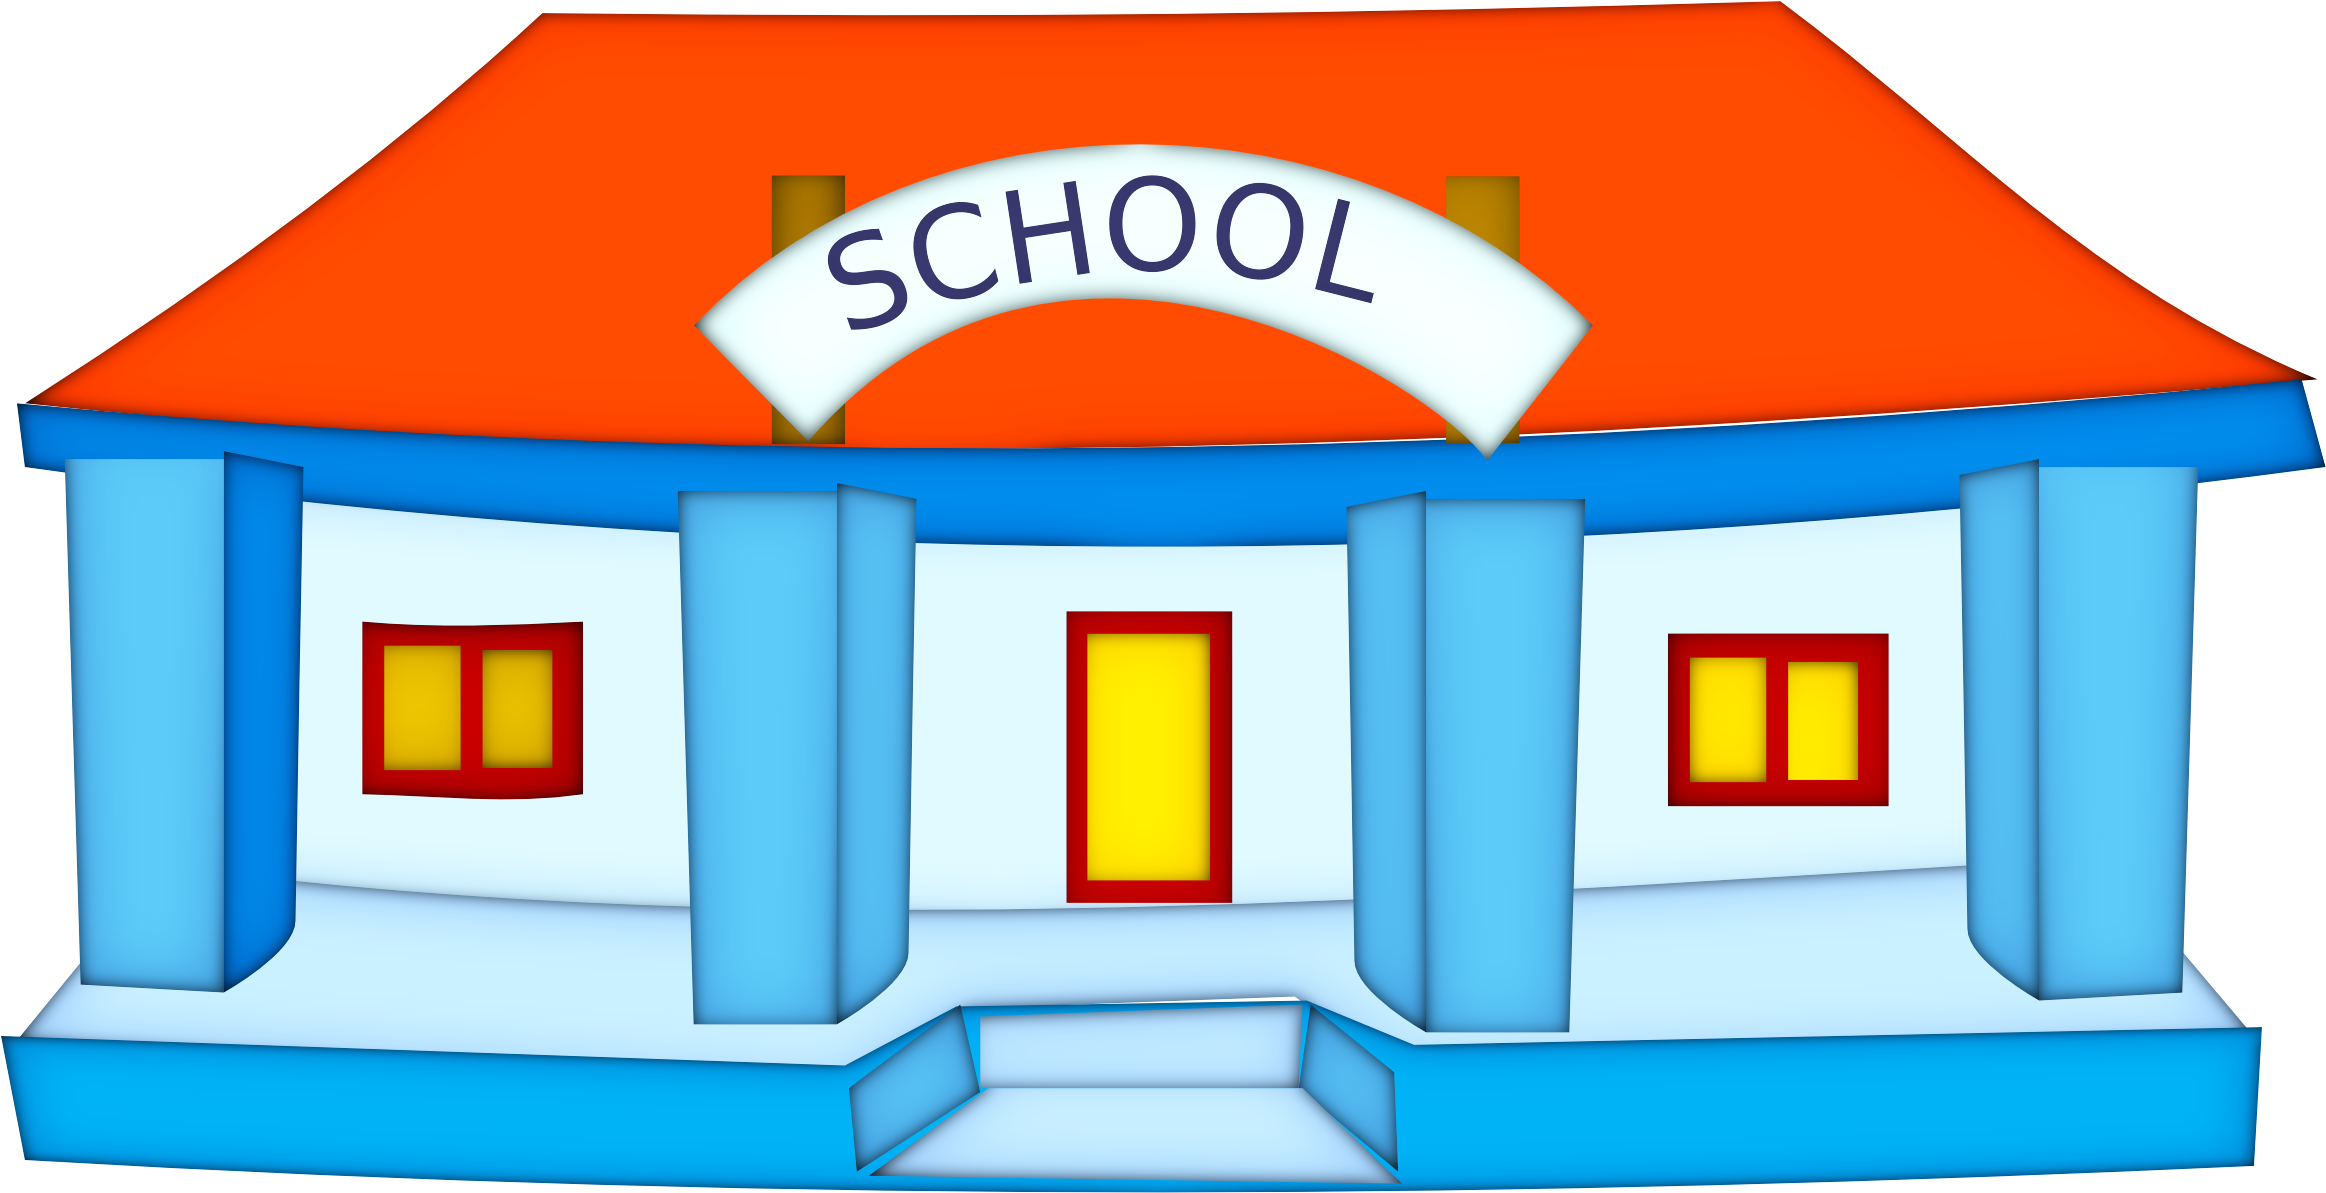 School Clipart Free Clip Art Images - School Building Clip Art (2400x1387)